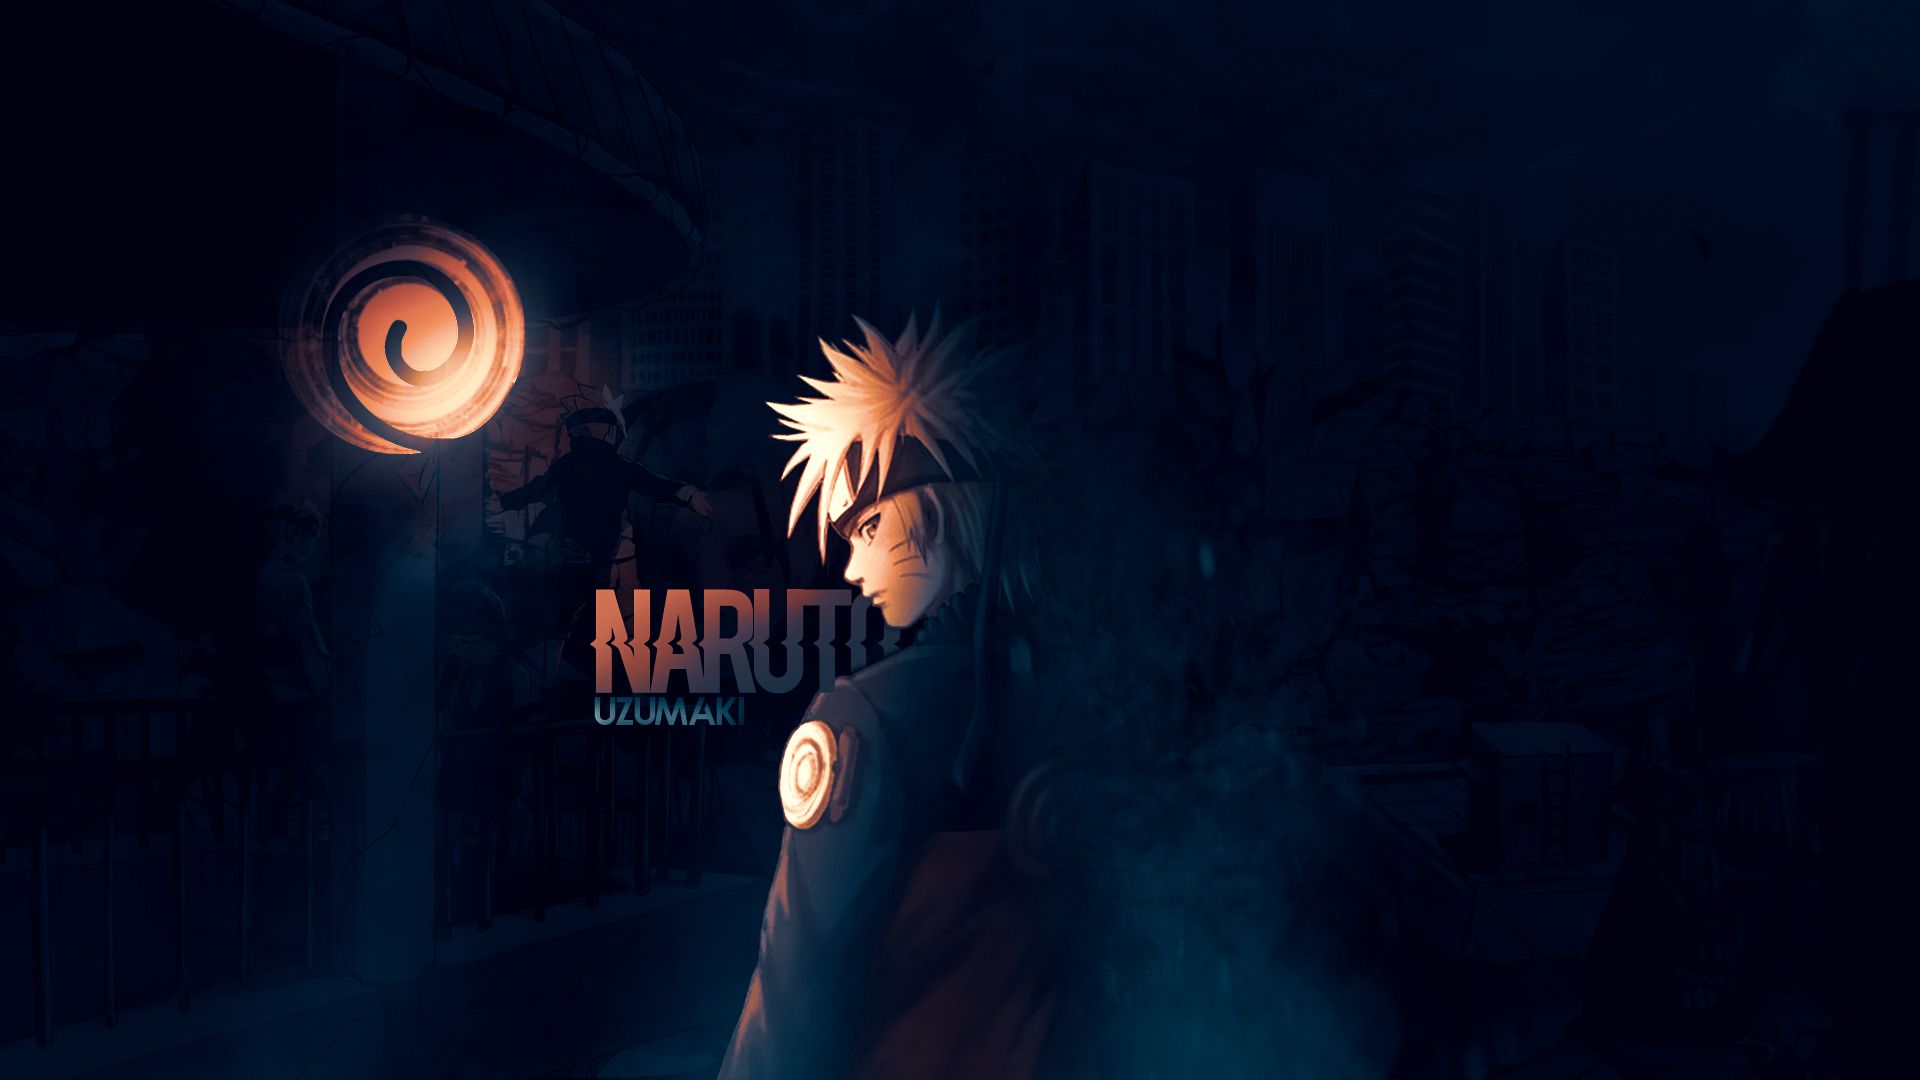 naruto uzumaki 4k wallpaper  Anime, Naruto pictures, Naruto wallpaper